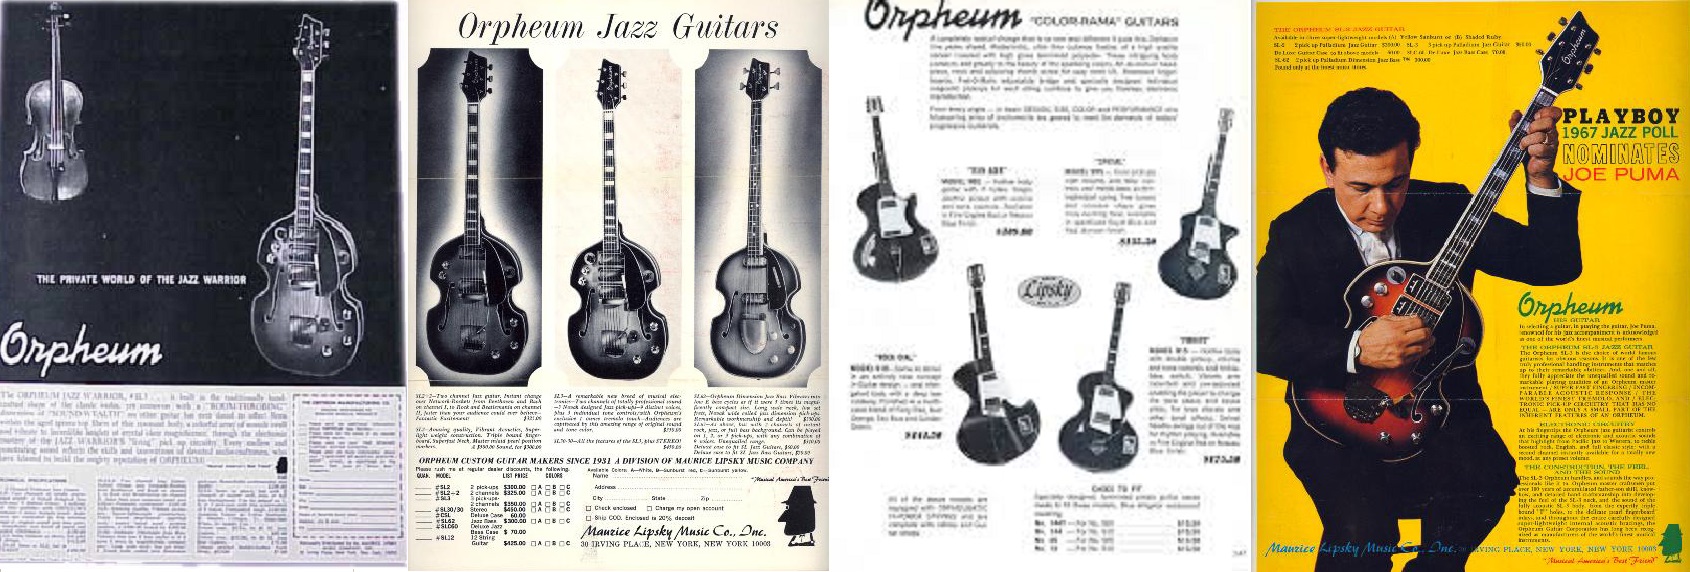 Orpheum, da Brand di banjo Made in USA a chitarre europee prodotte da Wandrè.